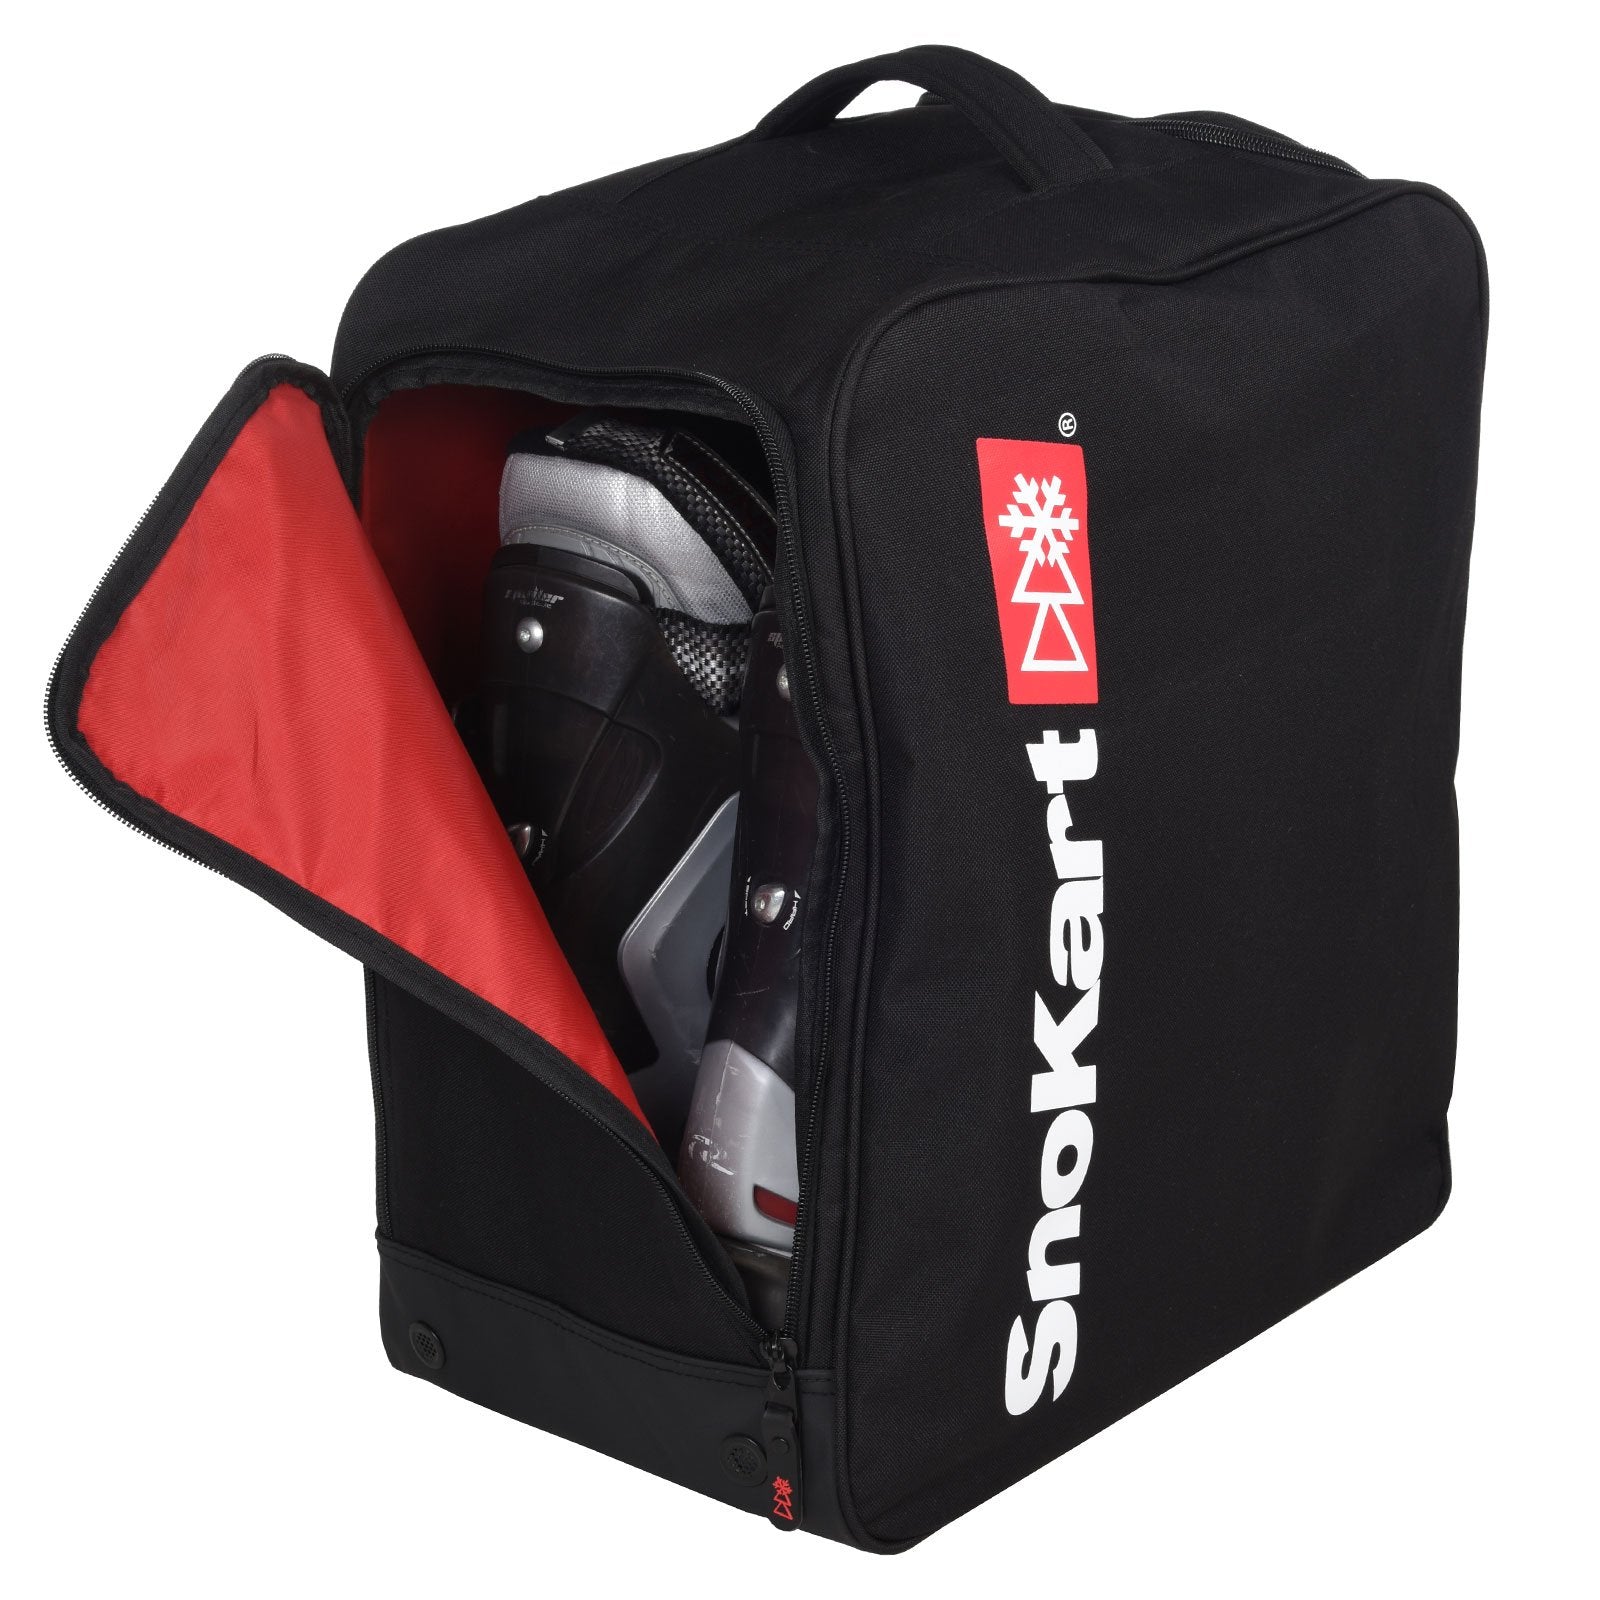 Snokart Boot & Helmet Bag